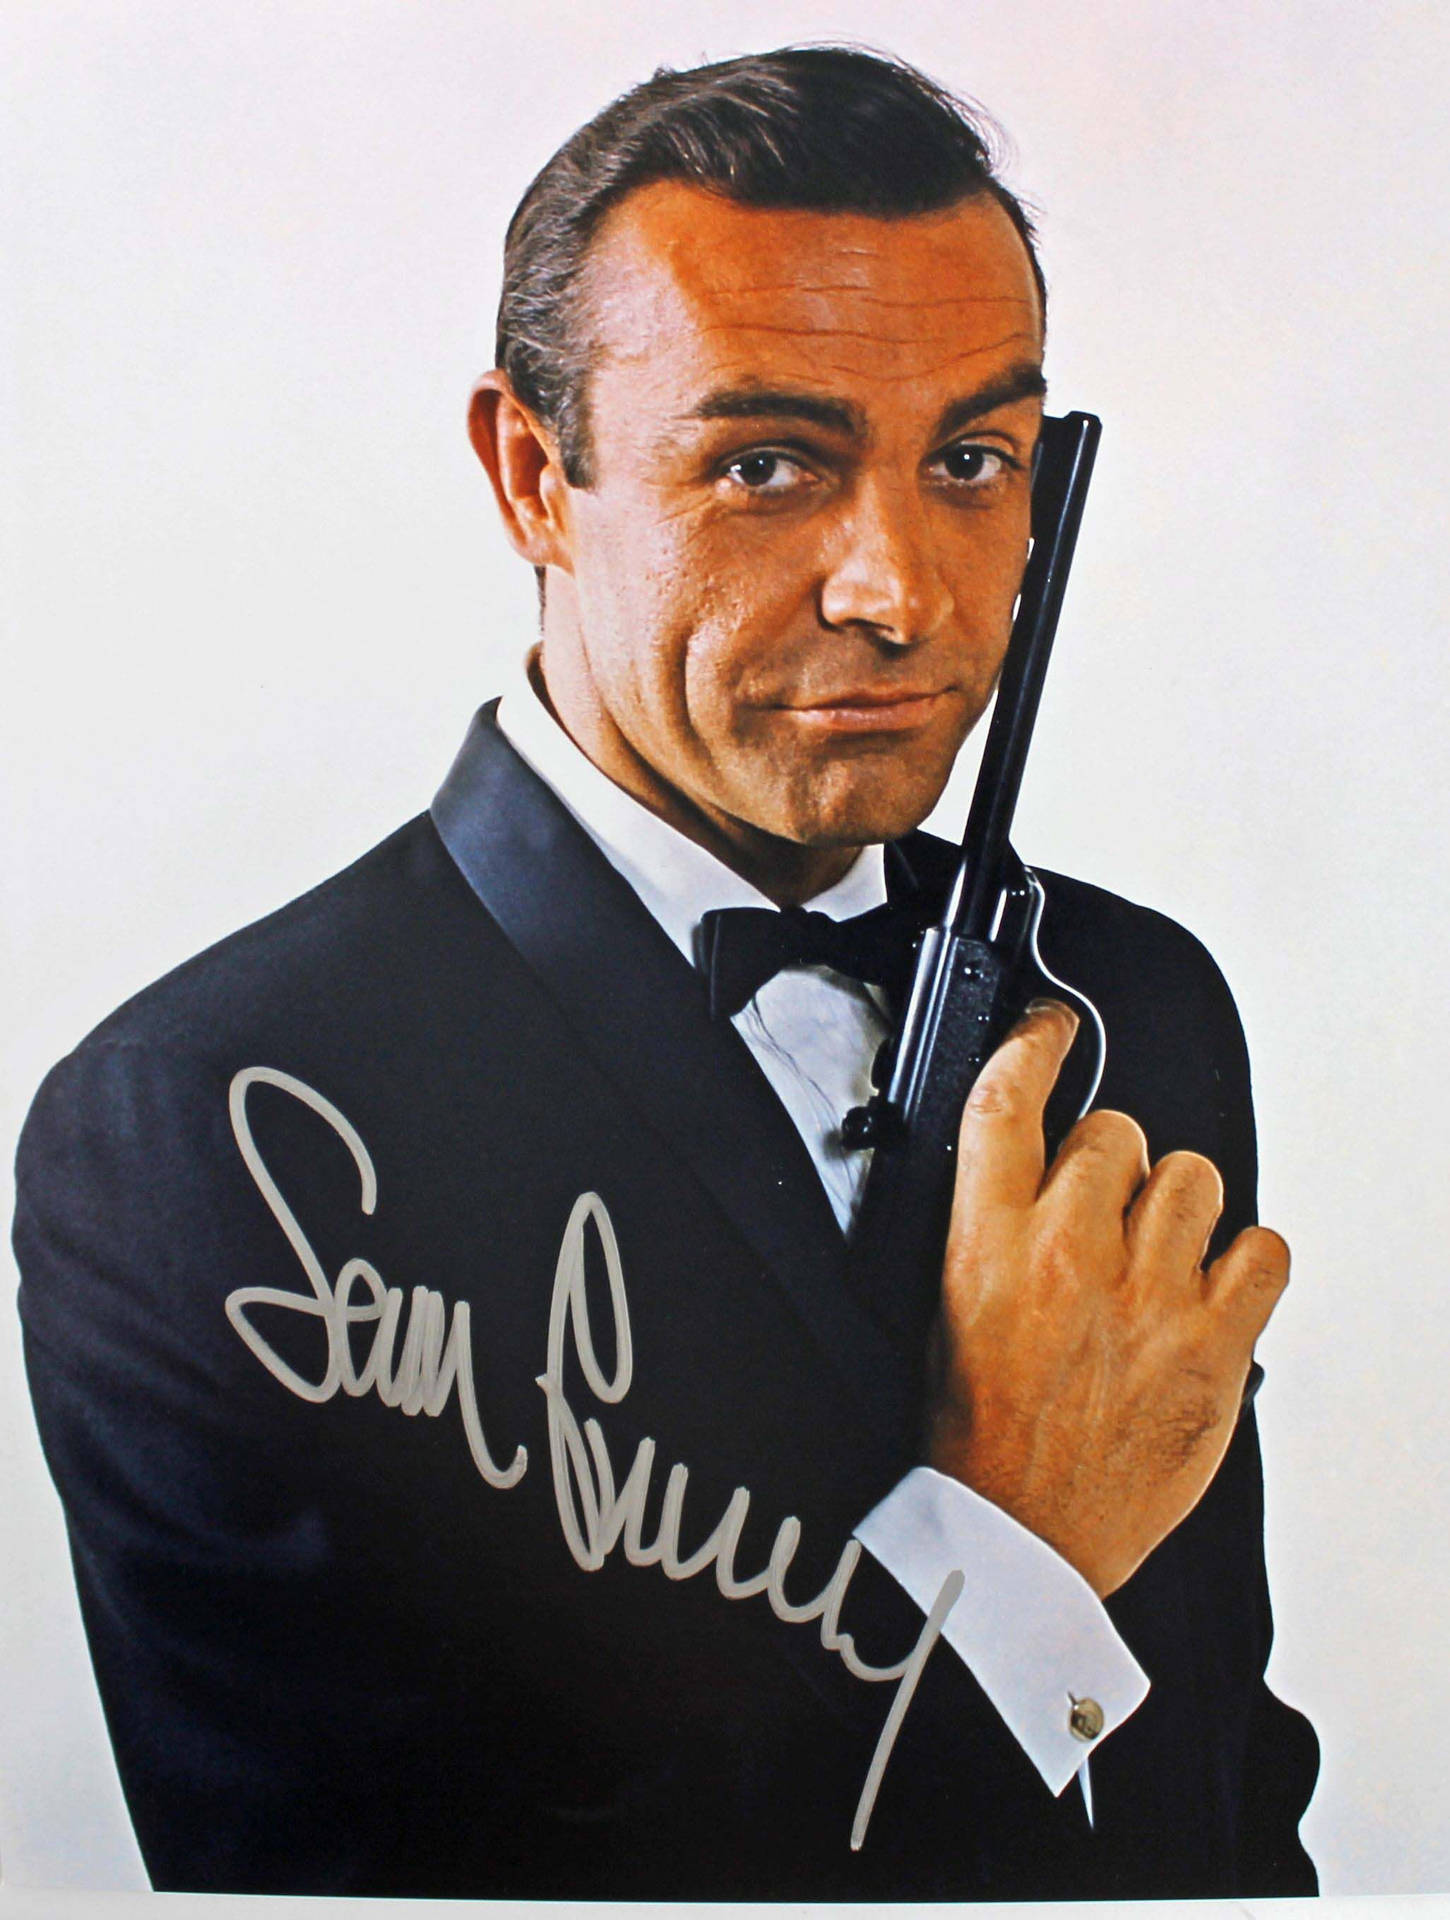 Sean Connery With Handgun Background